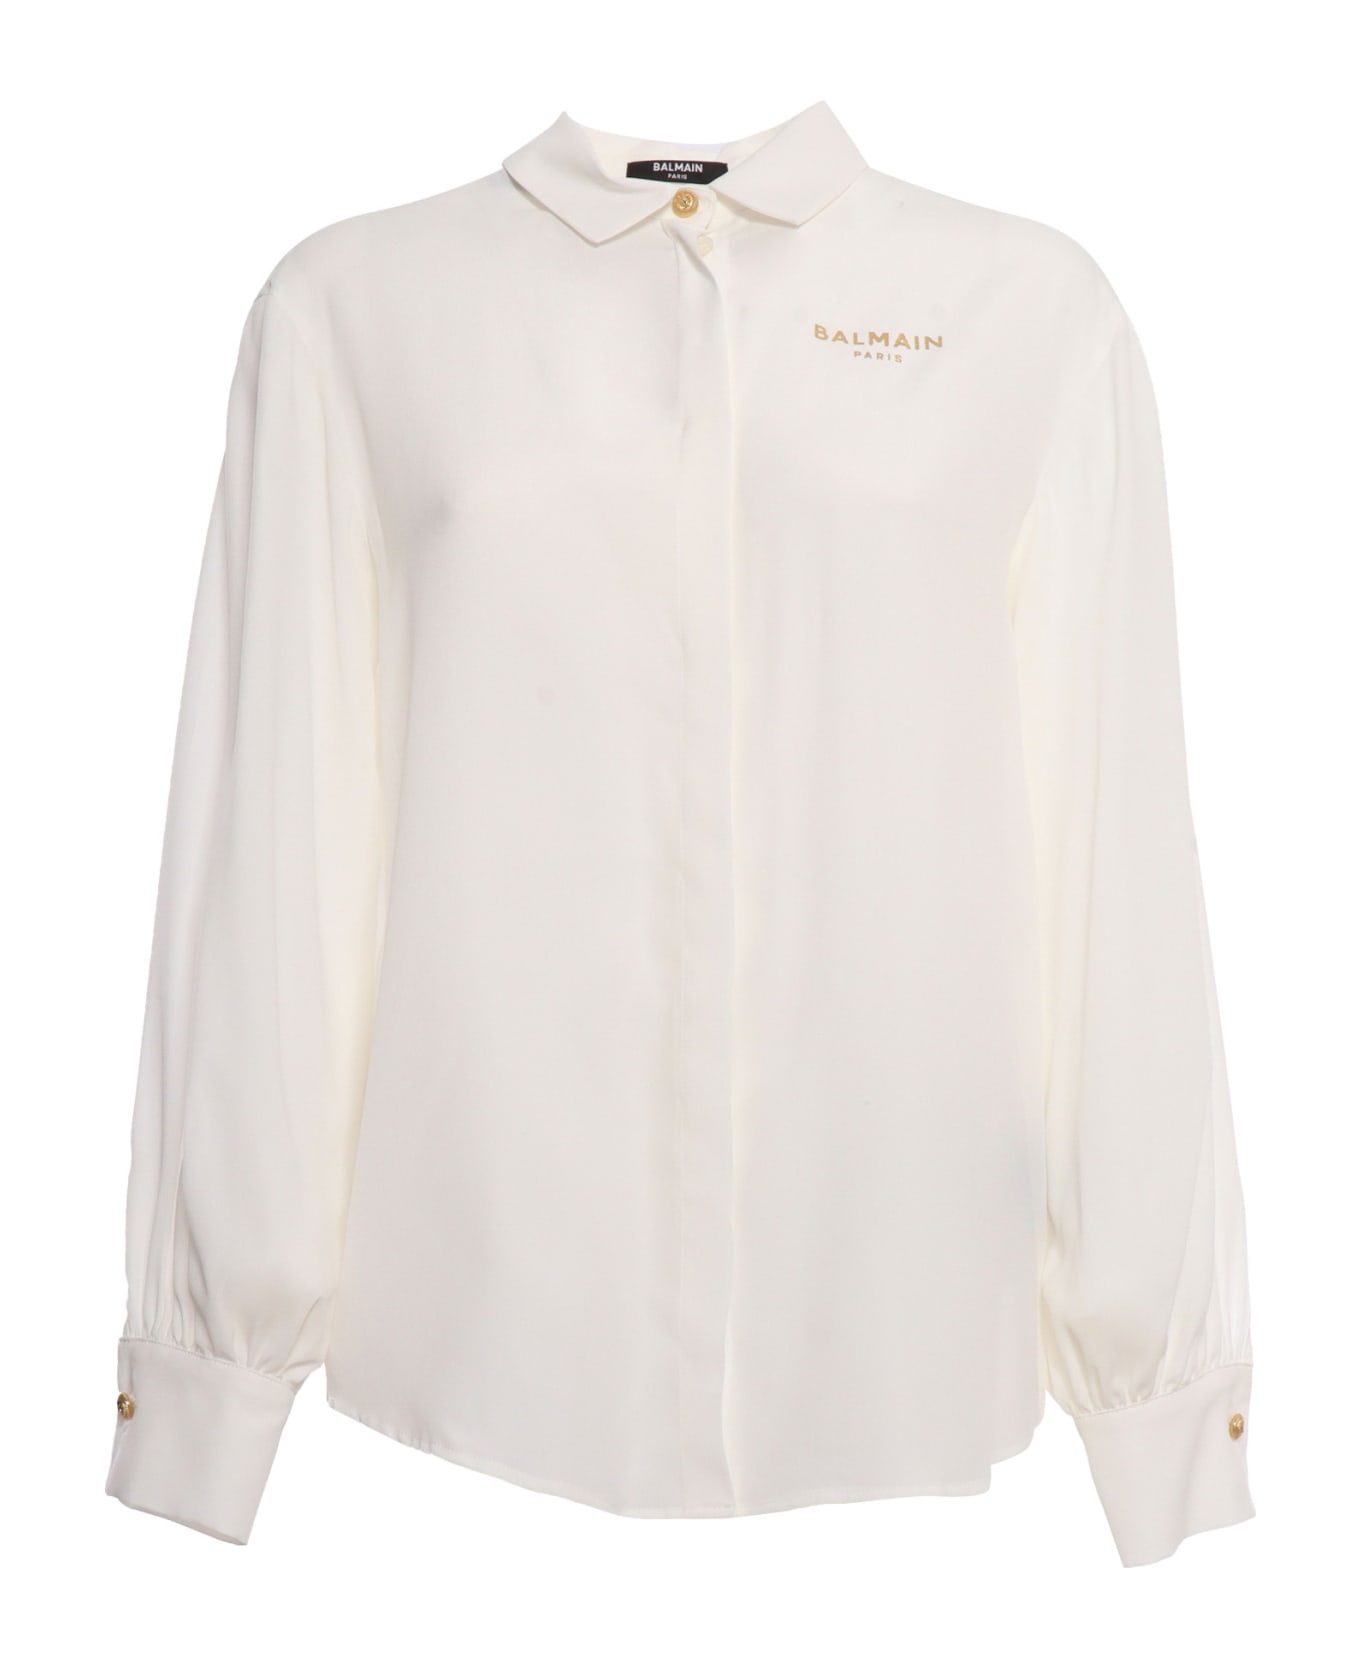 Balmain White Shirt With Logo - WHITE シャツ